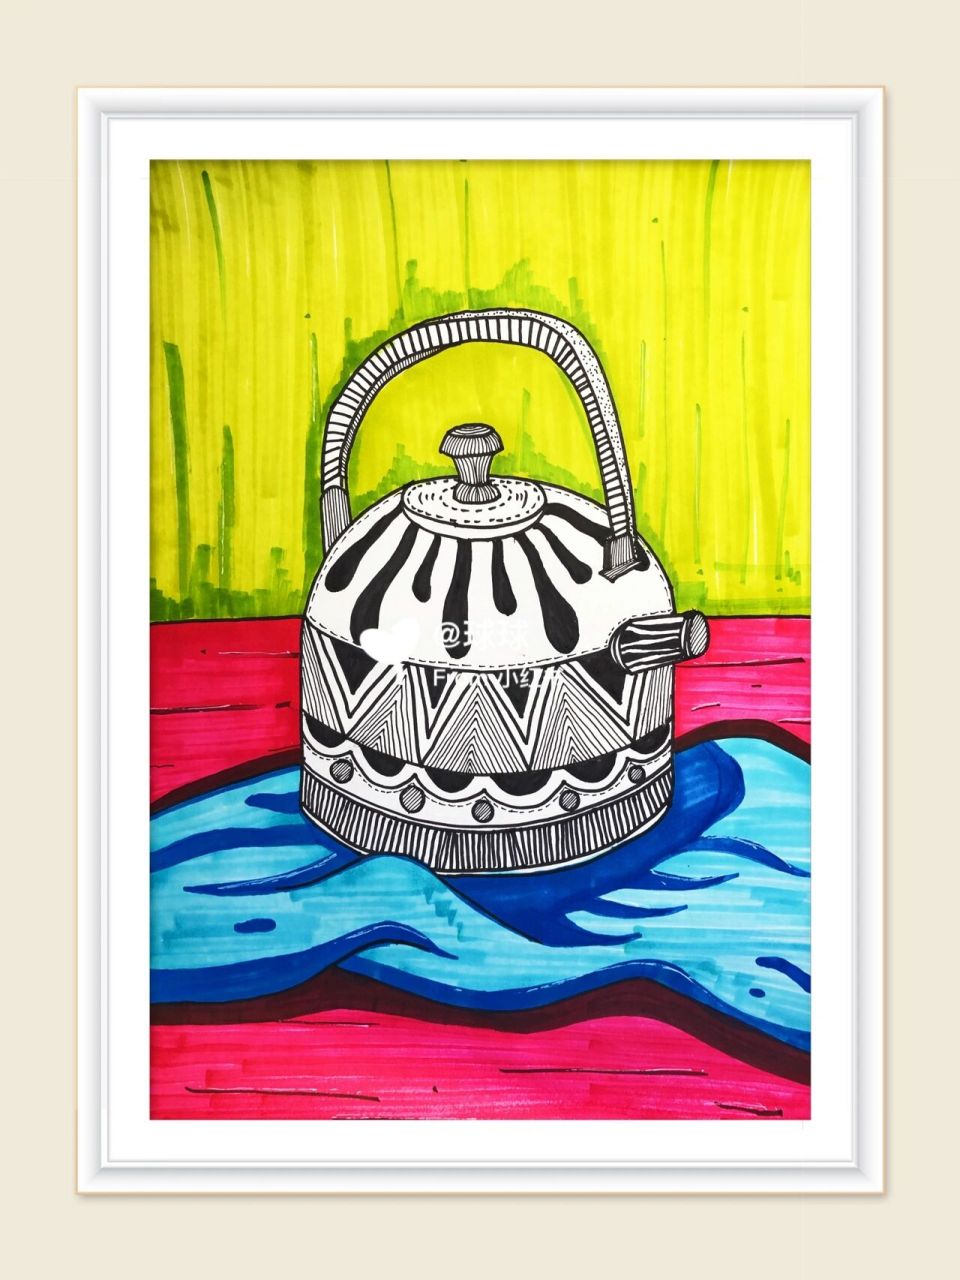 创意美术77儿童创意画 题目:《多样的水壶》 绘画种类:线描静物